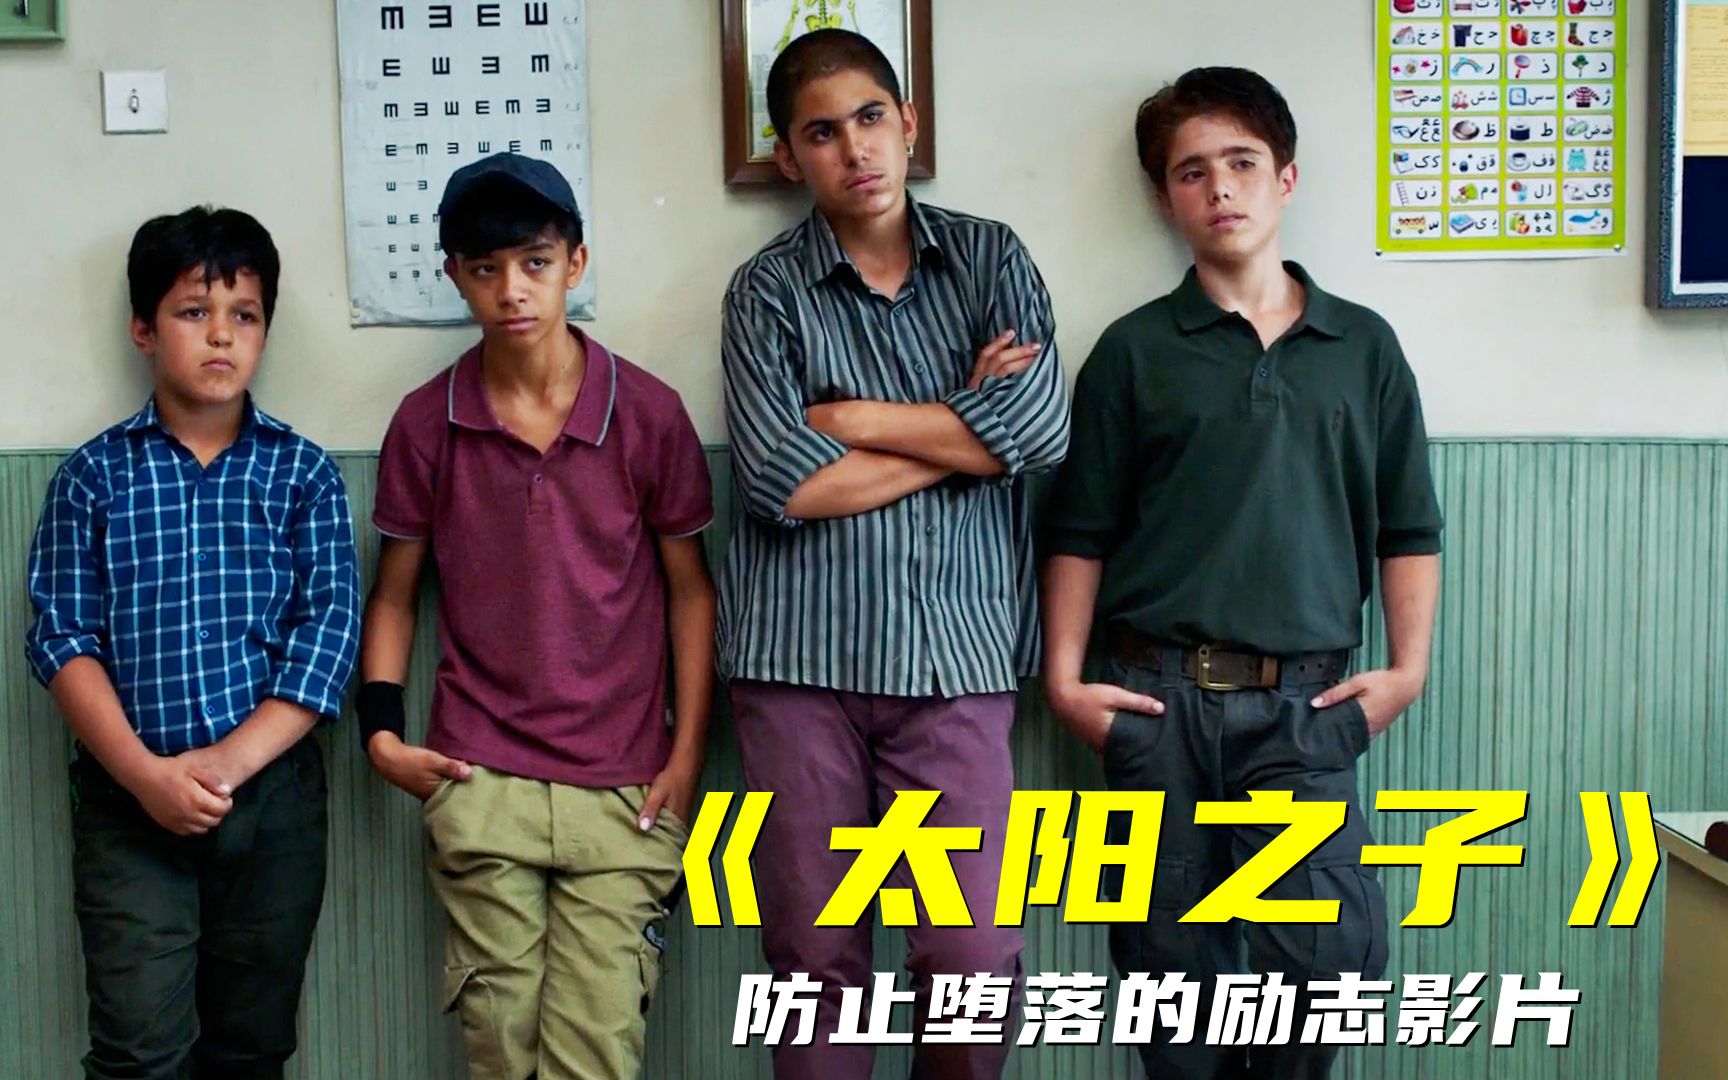 如果你不想学习，就看看这四个少年，绝对防止堕落的励志影片